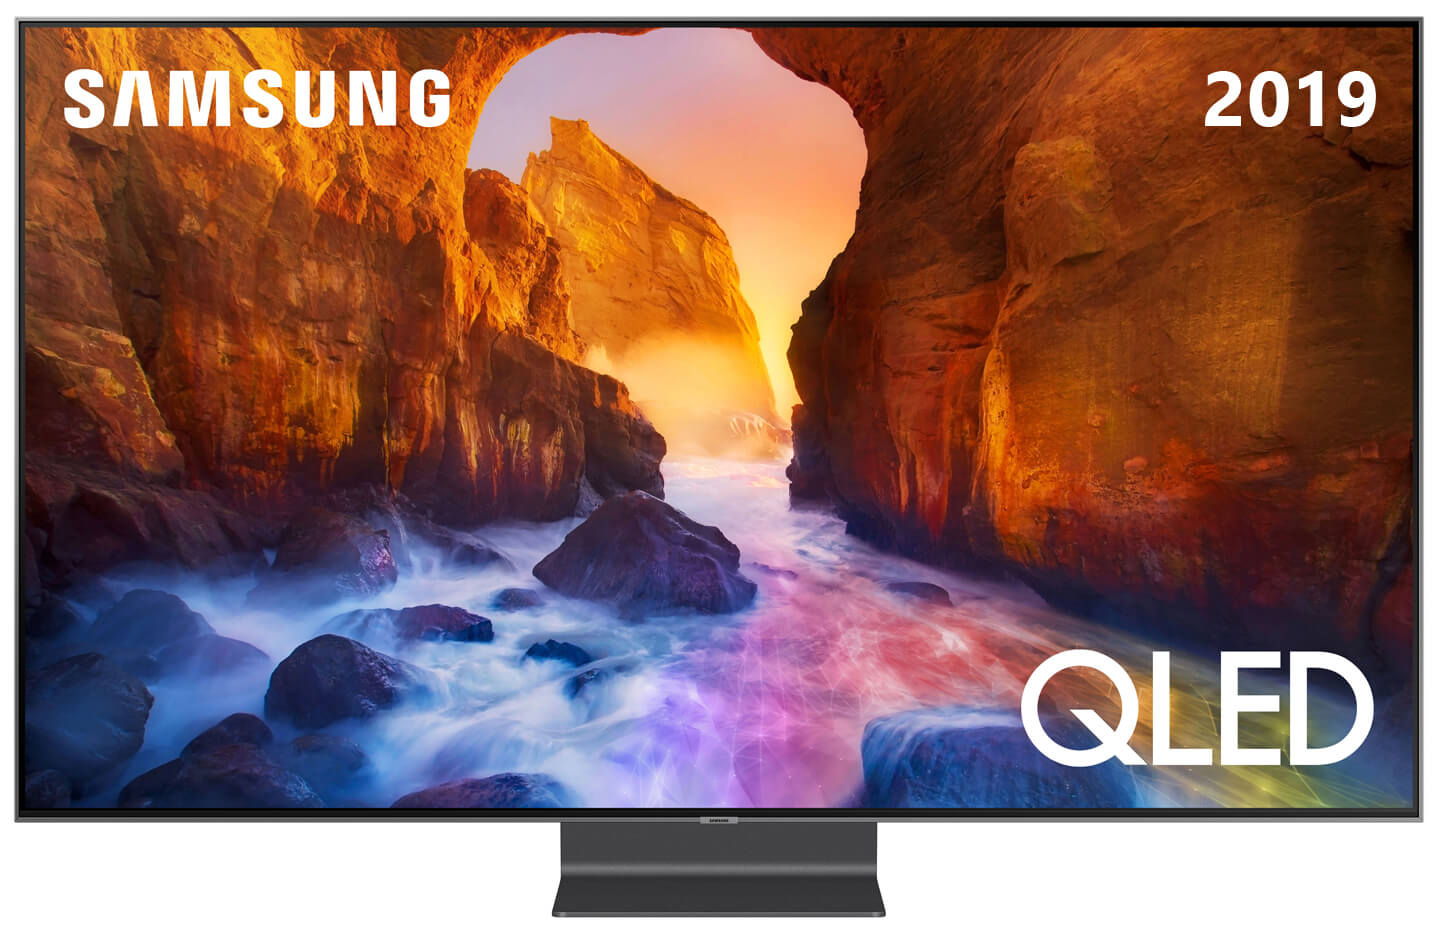 Herstellen versnelling Eik Samsung QLED TV line-up voor 2019 met 4K en 8K modellen | LetsGoDigital